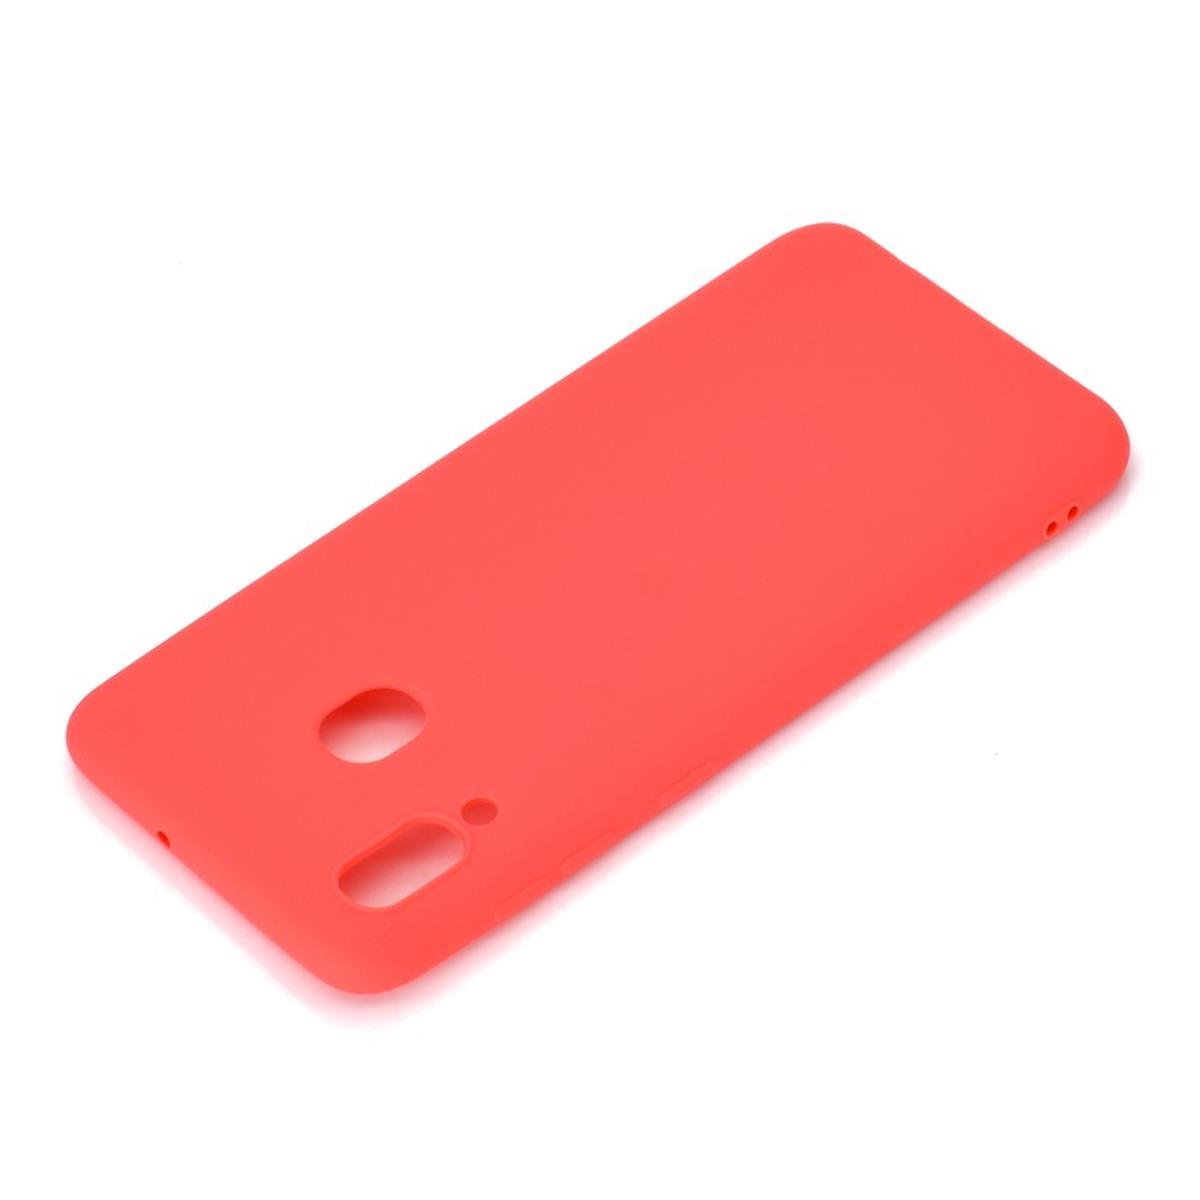 Hülle für Samsung Galaxy A30 Handyhülle Silikon Case Schutzhülle Cover matt Rot